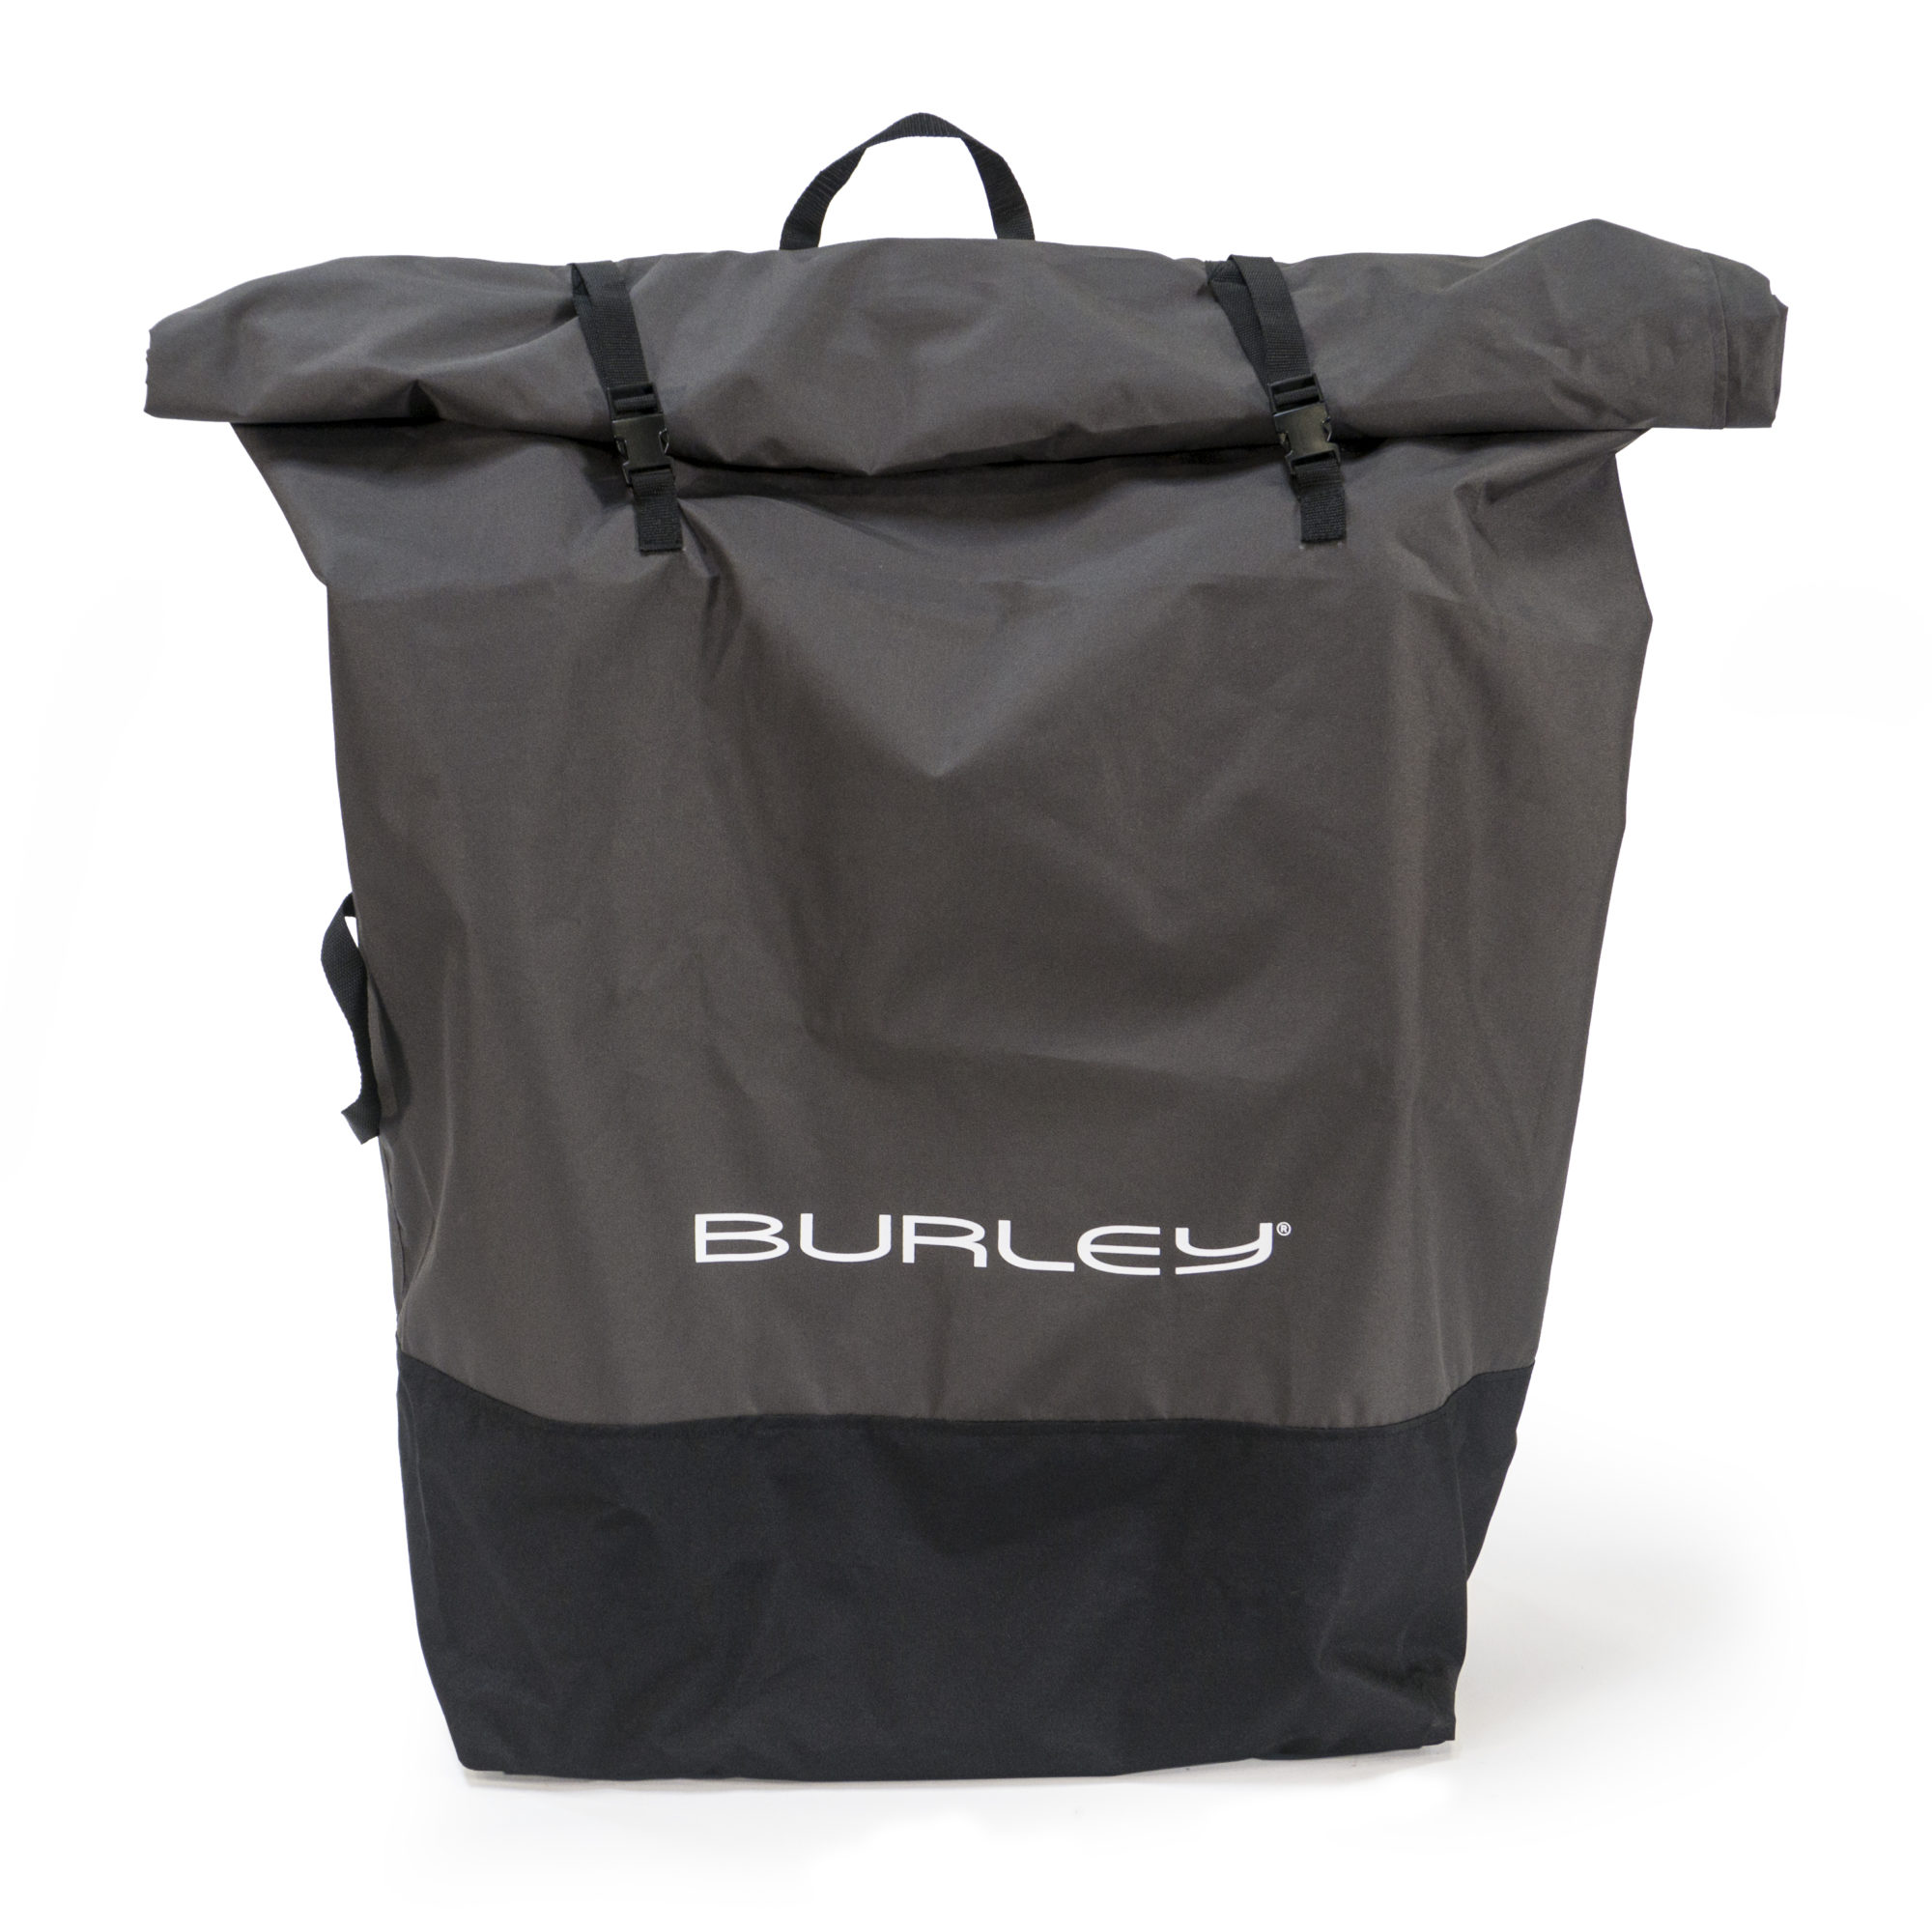 ベビーカー保管用カバー - 公式バーレー(Burley)自転車用ベビーカー 